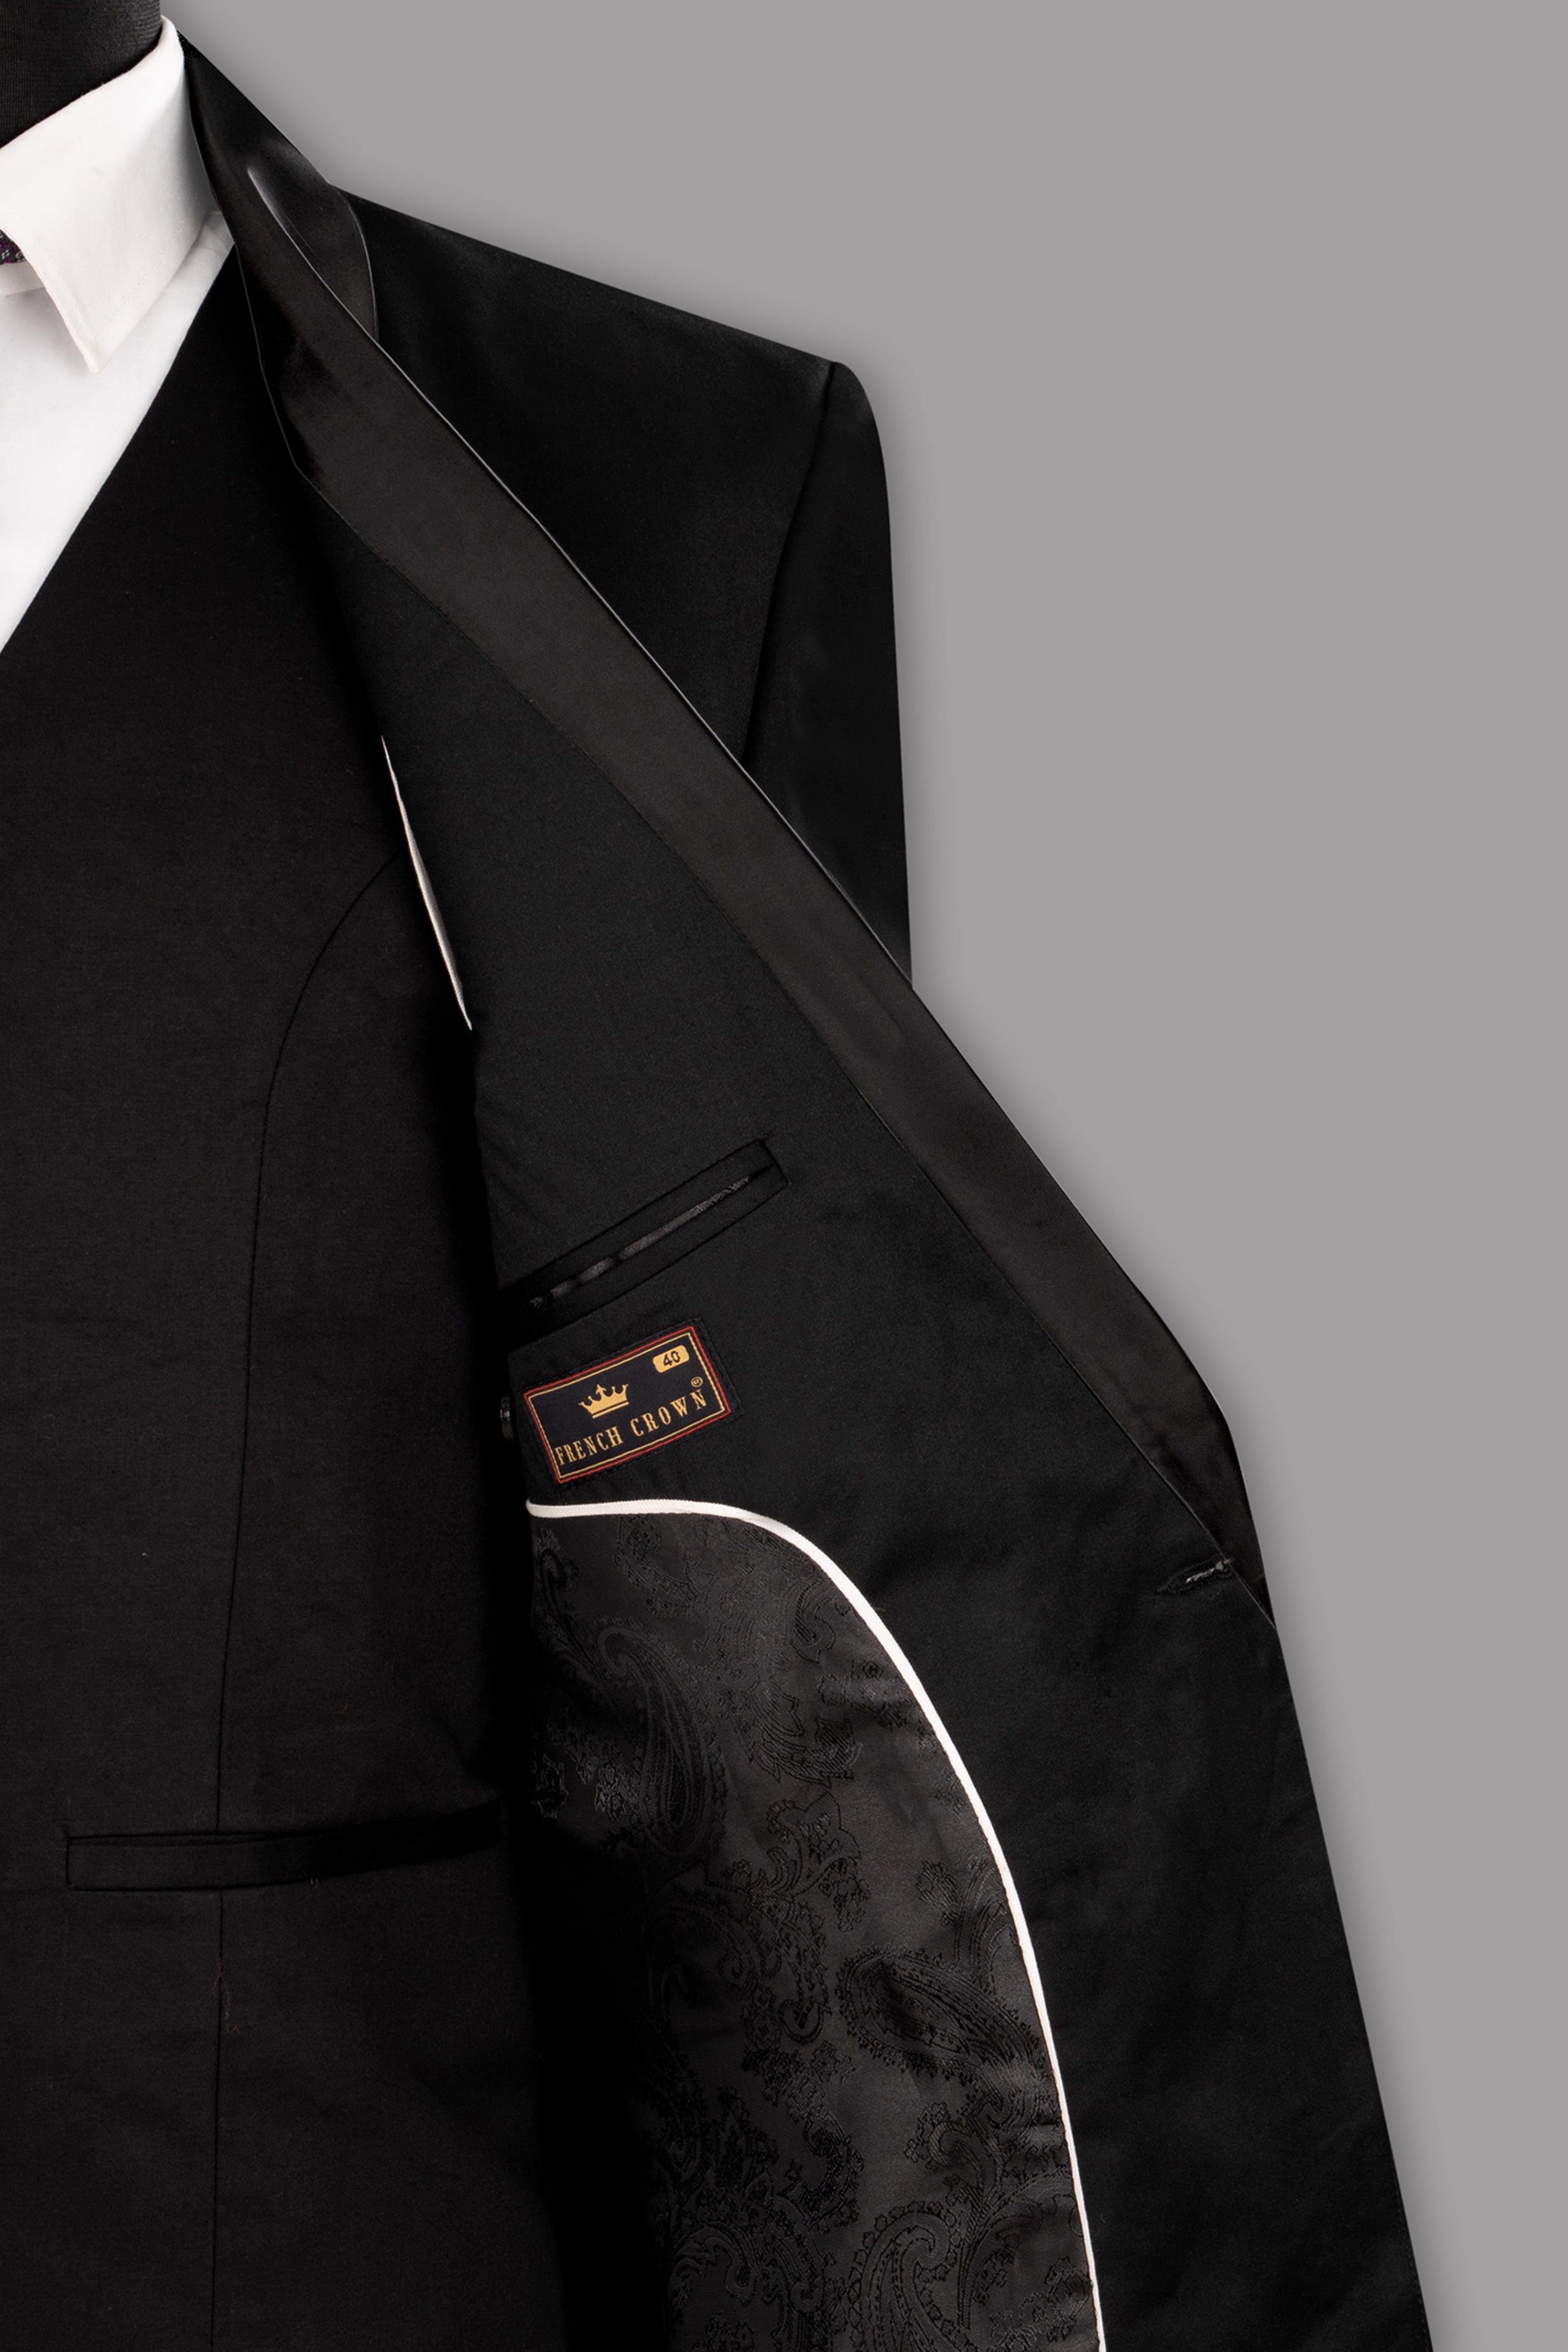 Black Textured Premium Terry Rayon Wedding Tuxedo Blazer For Men.